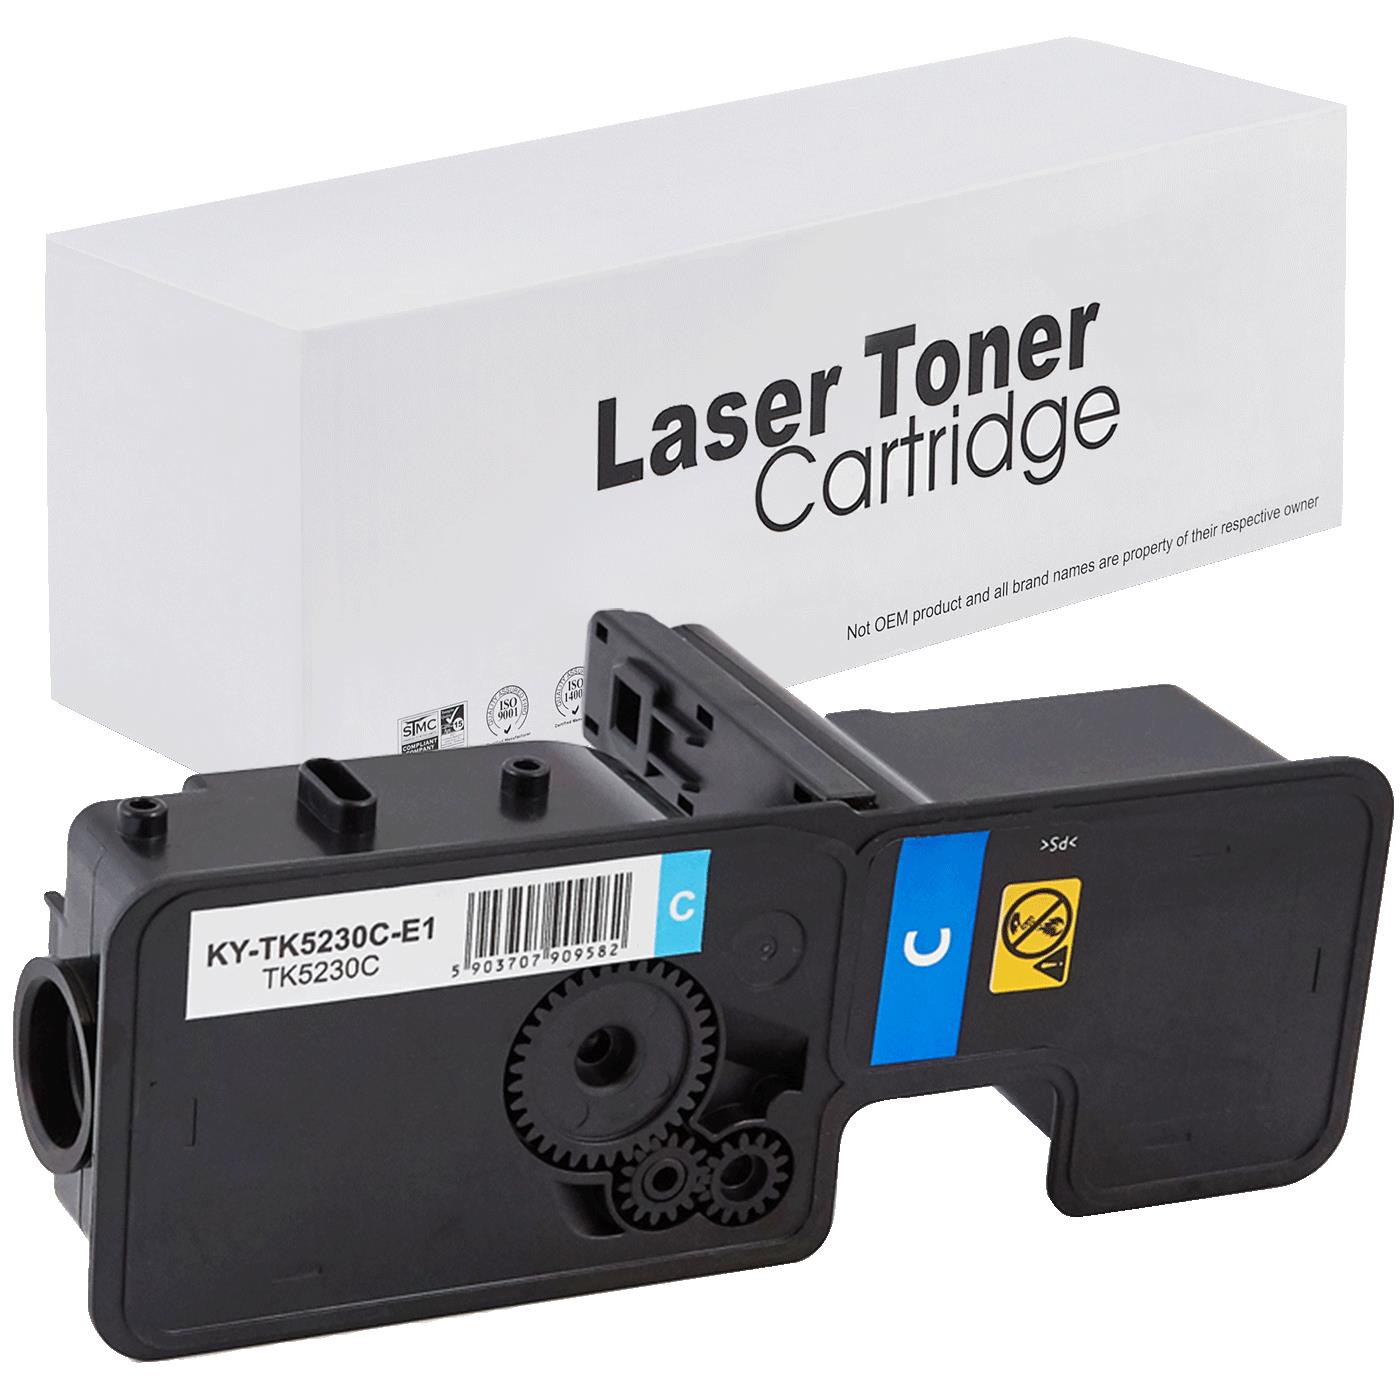 съвместима тонер касета за принтери и печатащи устройства на Kyocera Mita Ecosys P5021cdw Toner KY-TK5230C | TK5230C. Ниски цени, прецизно изпълнение, високо качество.